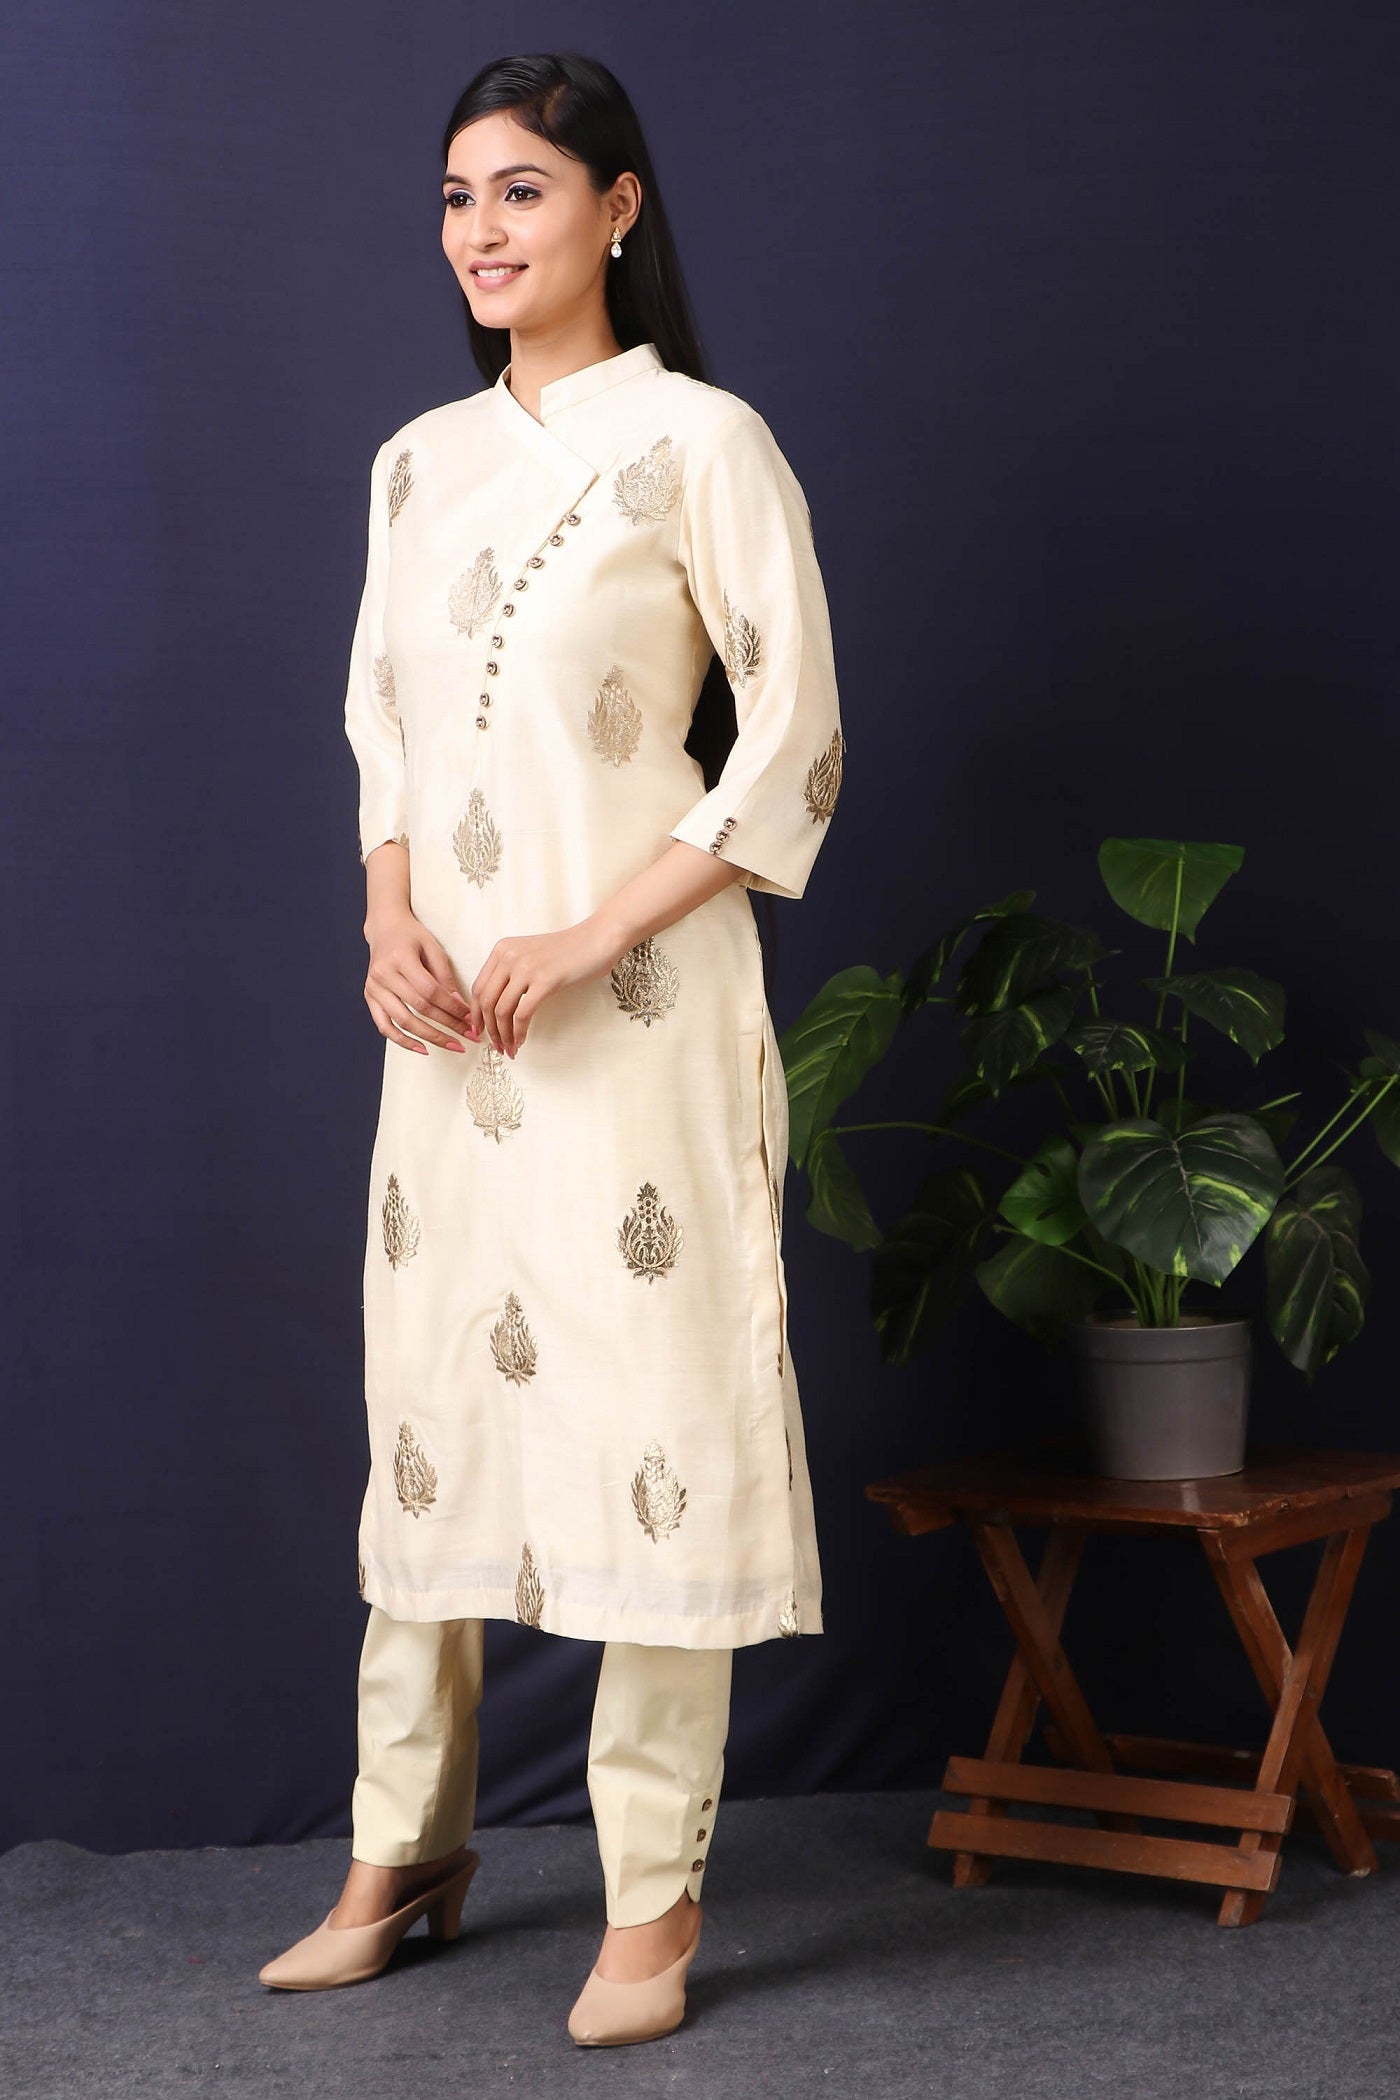 Indian Women's Plain Cotton Kurti Top By Chichi | eBay